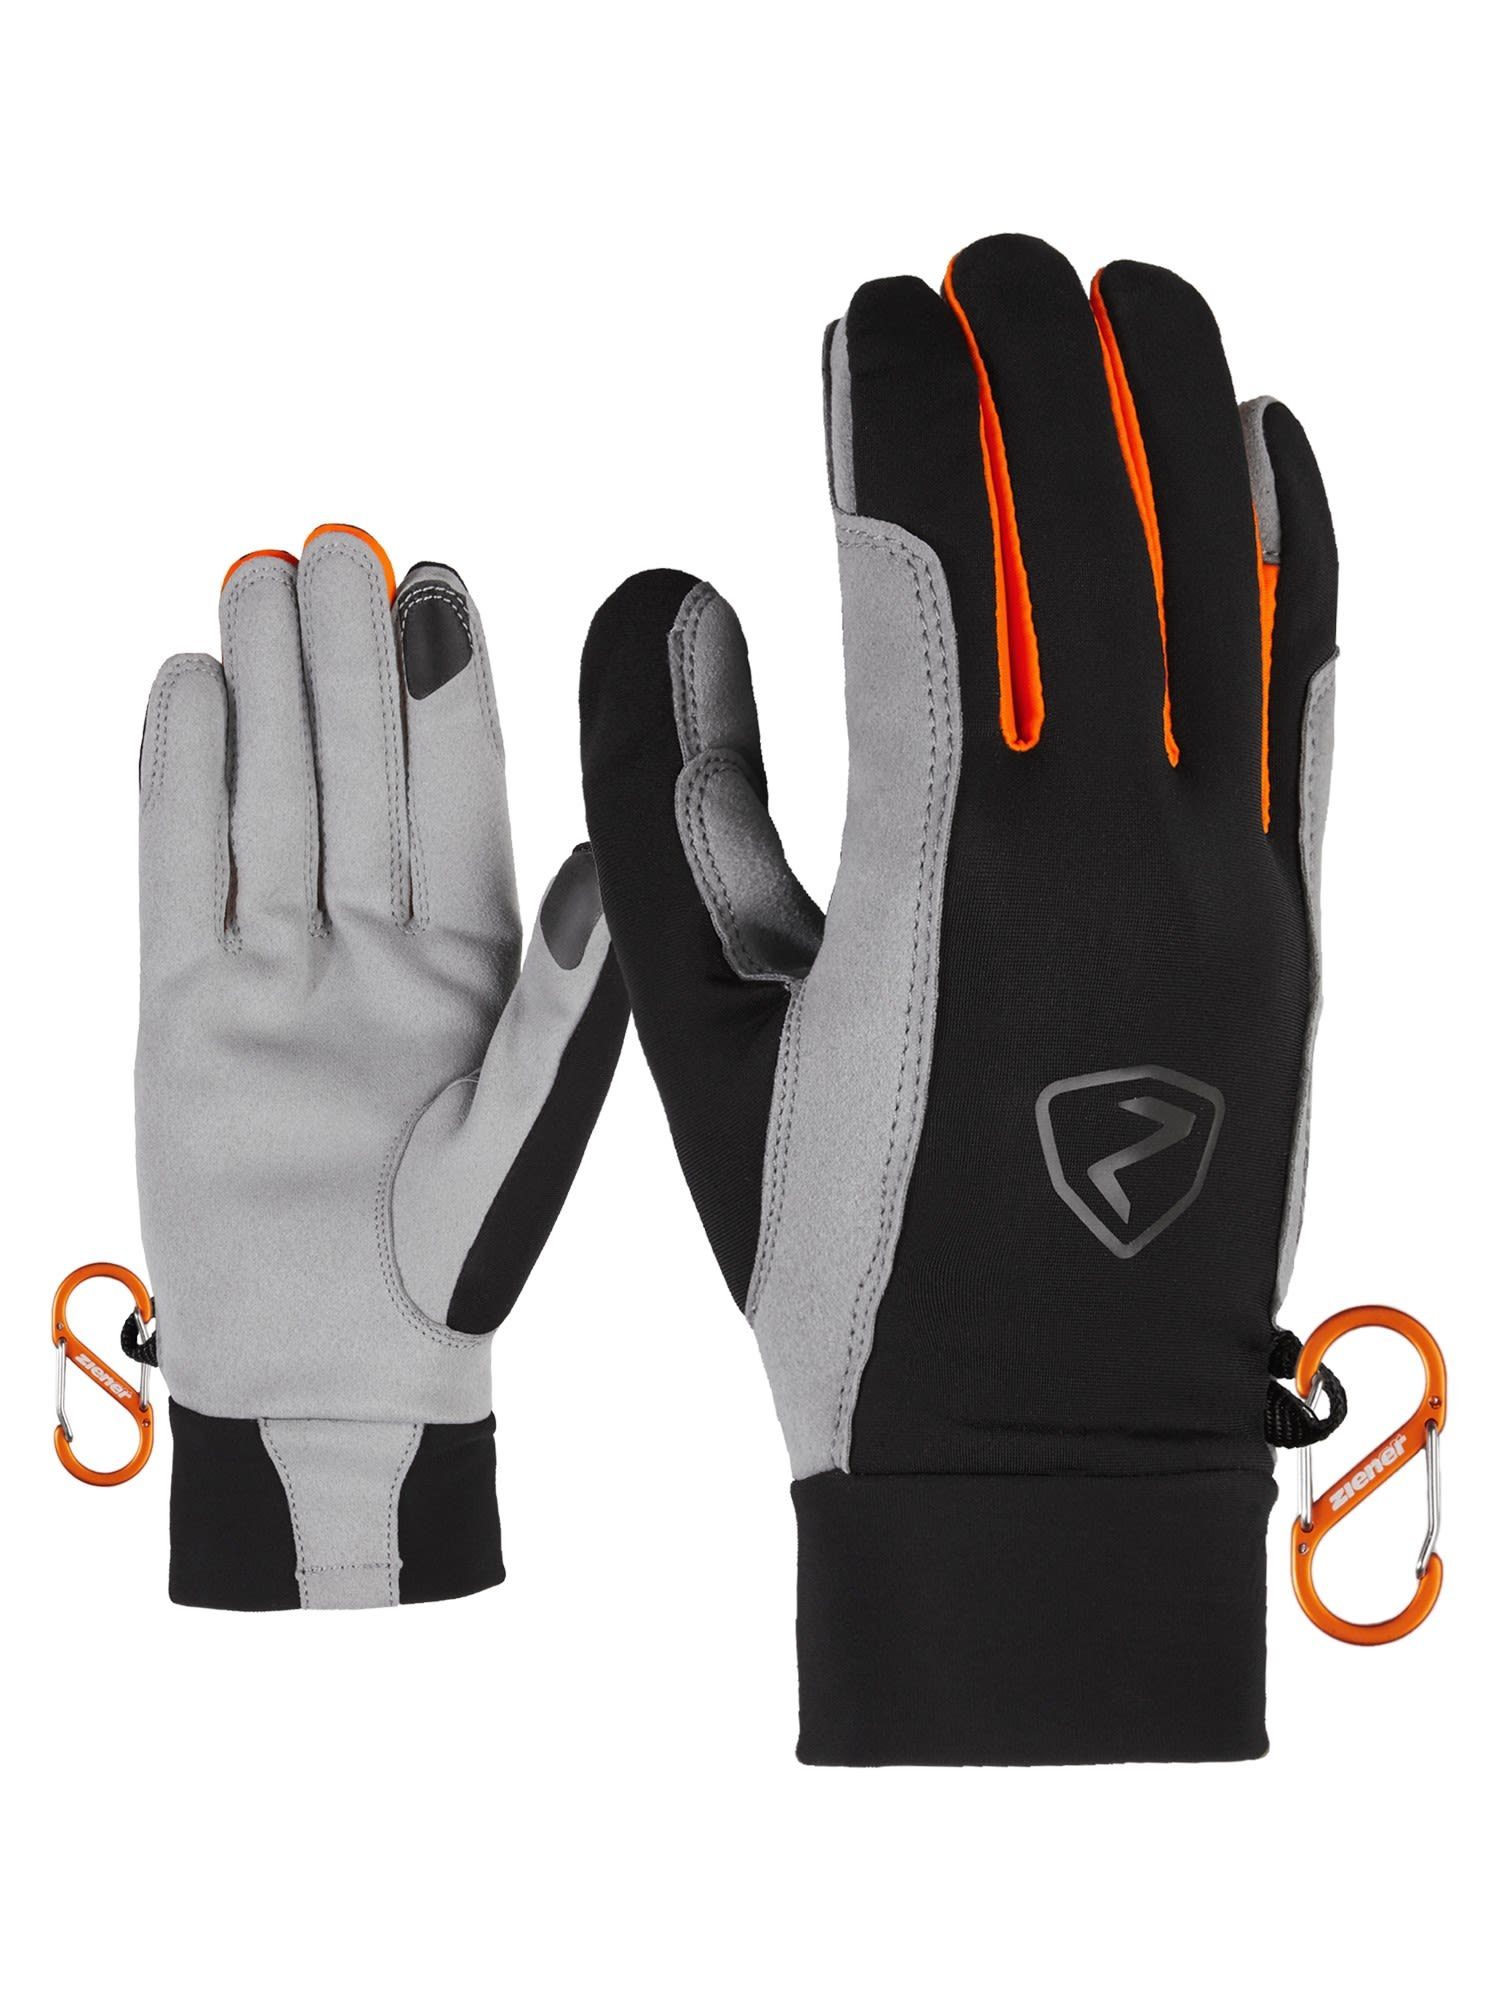 Ziener Fleecehandschuhe Ziener Gysmo Touch Glove Accessoires Black - New Orange